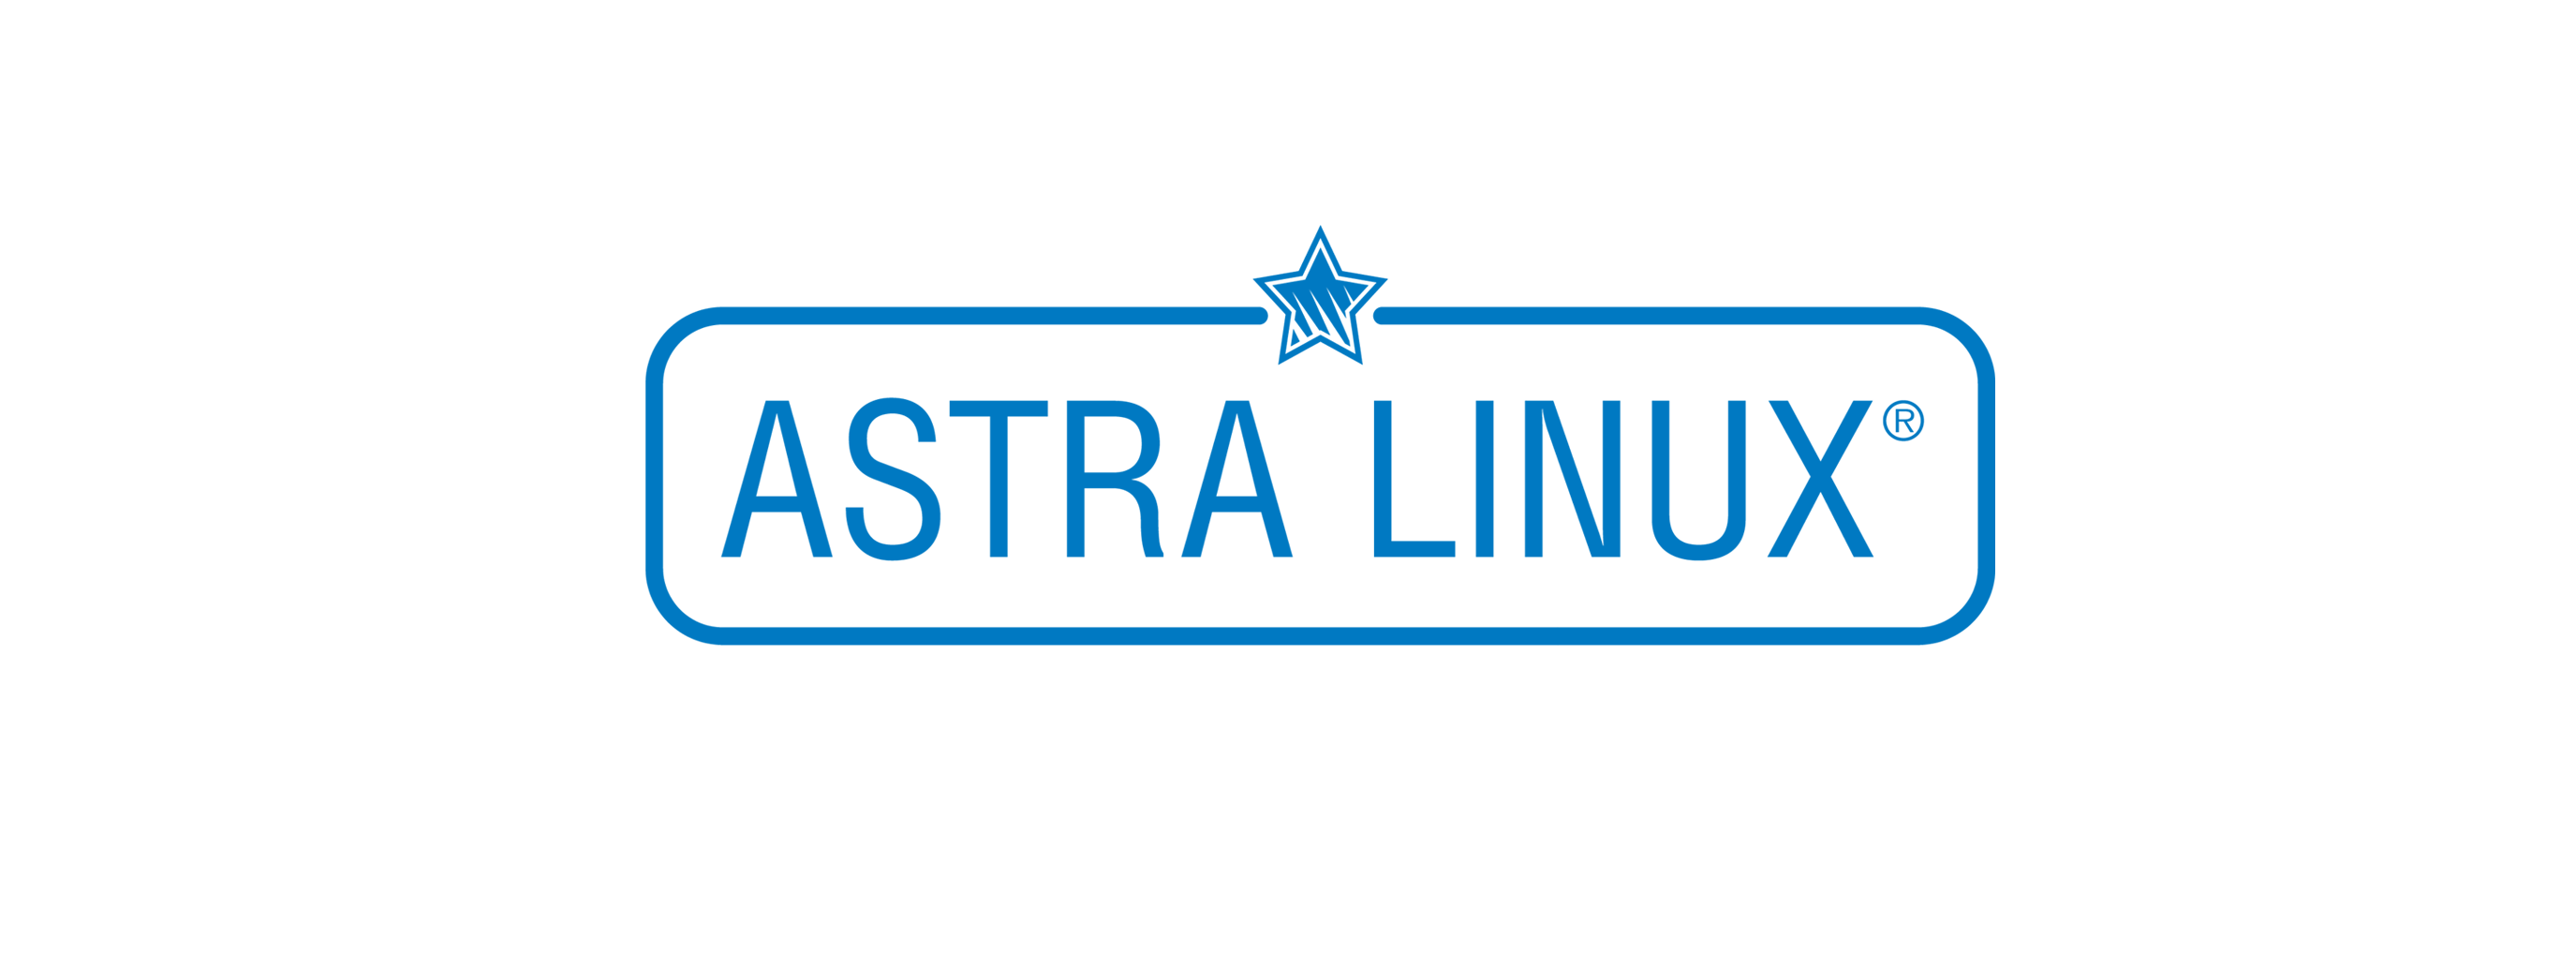 Лицензия РусБИТех Astra Linux Special Edition (очередное обновление 1.7), уровень защищенности Максимальный (Смоленск), РУСБ.10015-01 (ФСТЭК), Russian, на 36 месяцев базовая лицензия для виртуального сервера, диск (OS2101X8617DSK000VS02-PO36) Astra Linux Special Edition (очередное обновление 1.7), уровень защищенности Максимальный (Смоленск) - фото 1